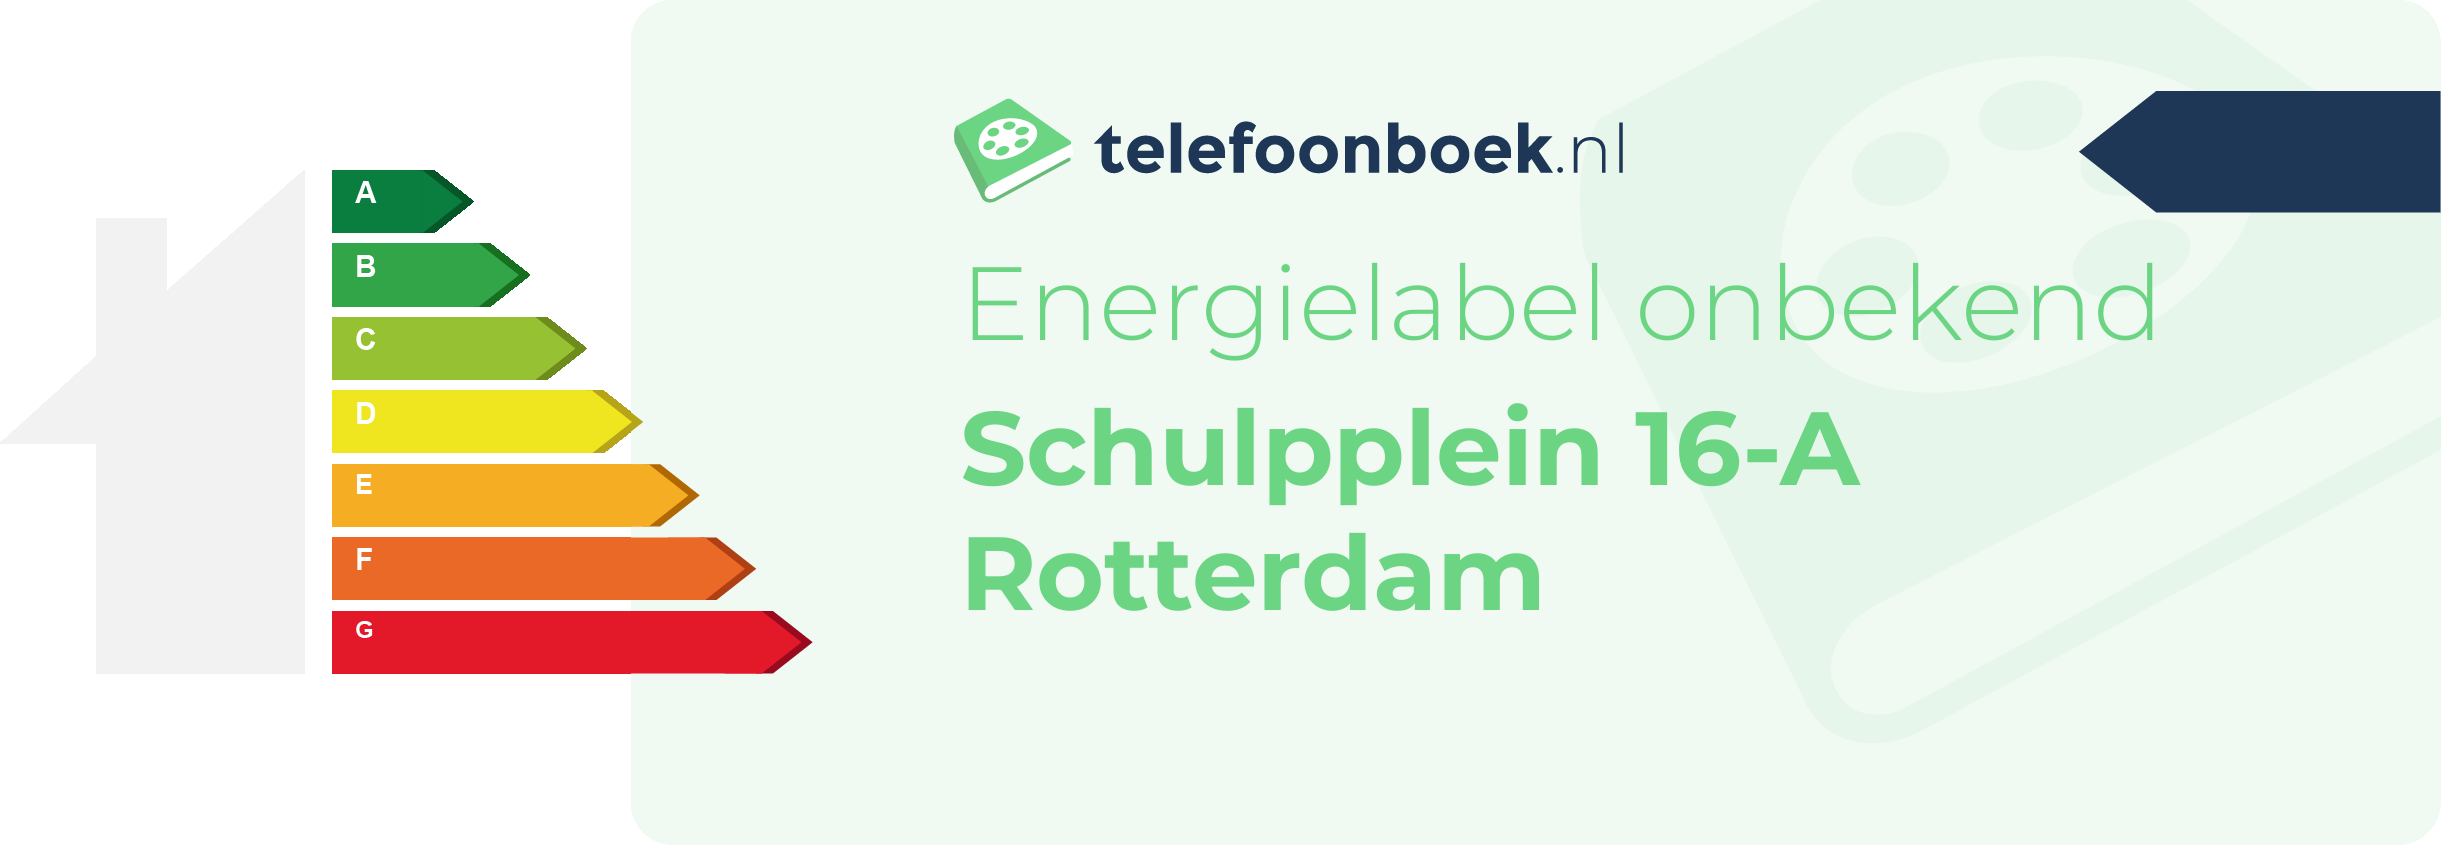 Energielabel Schulpplein 16-A Rotterdam